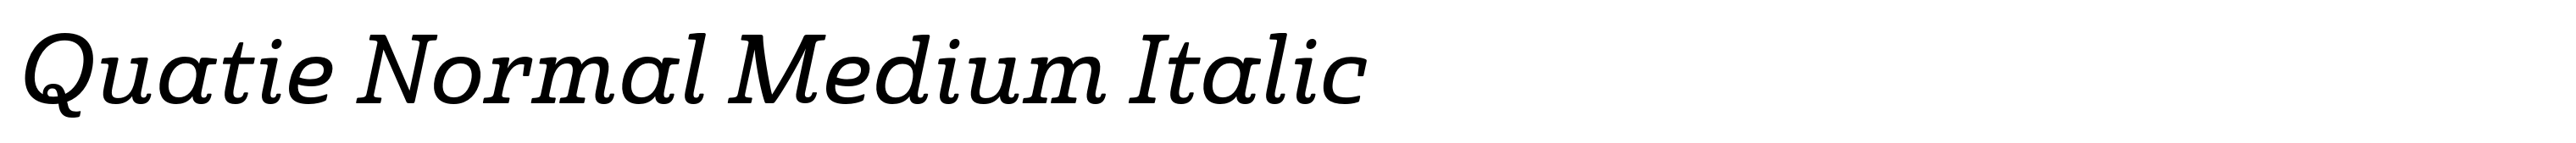 Quatie Normal Medium Italic